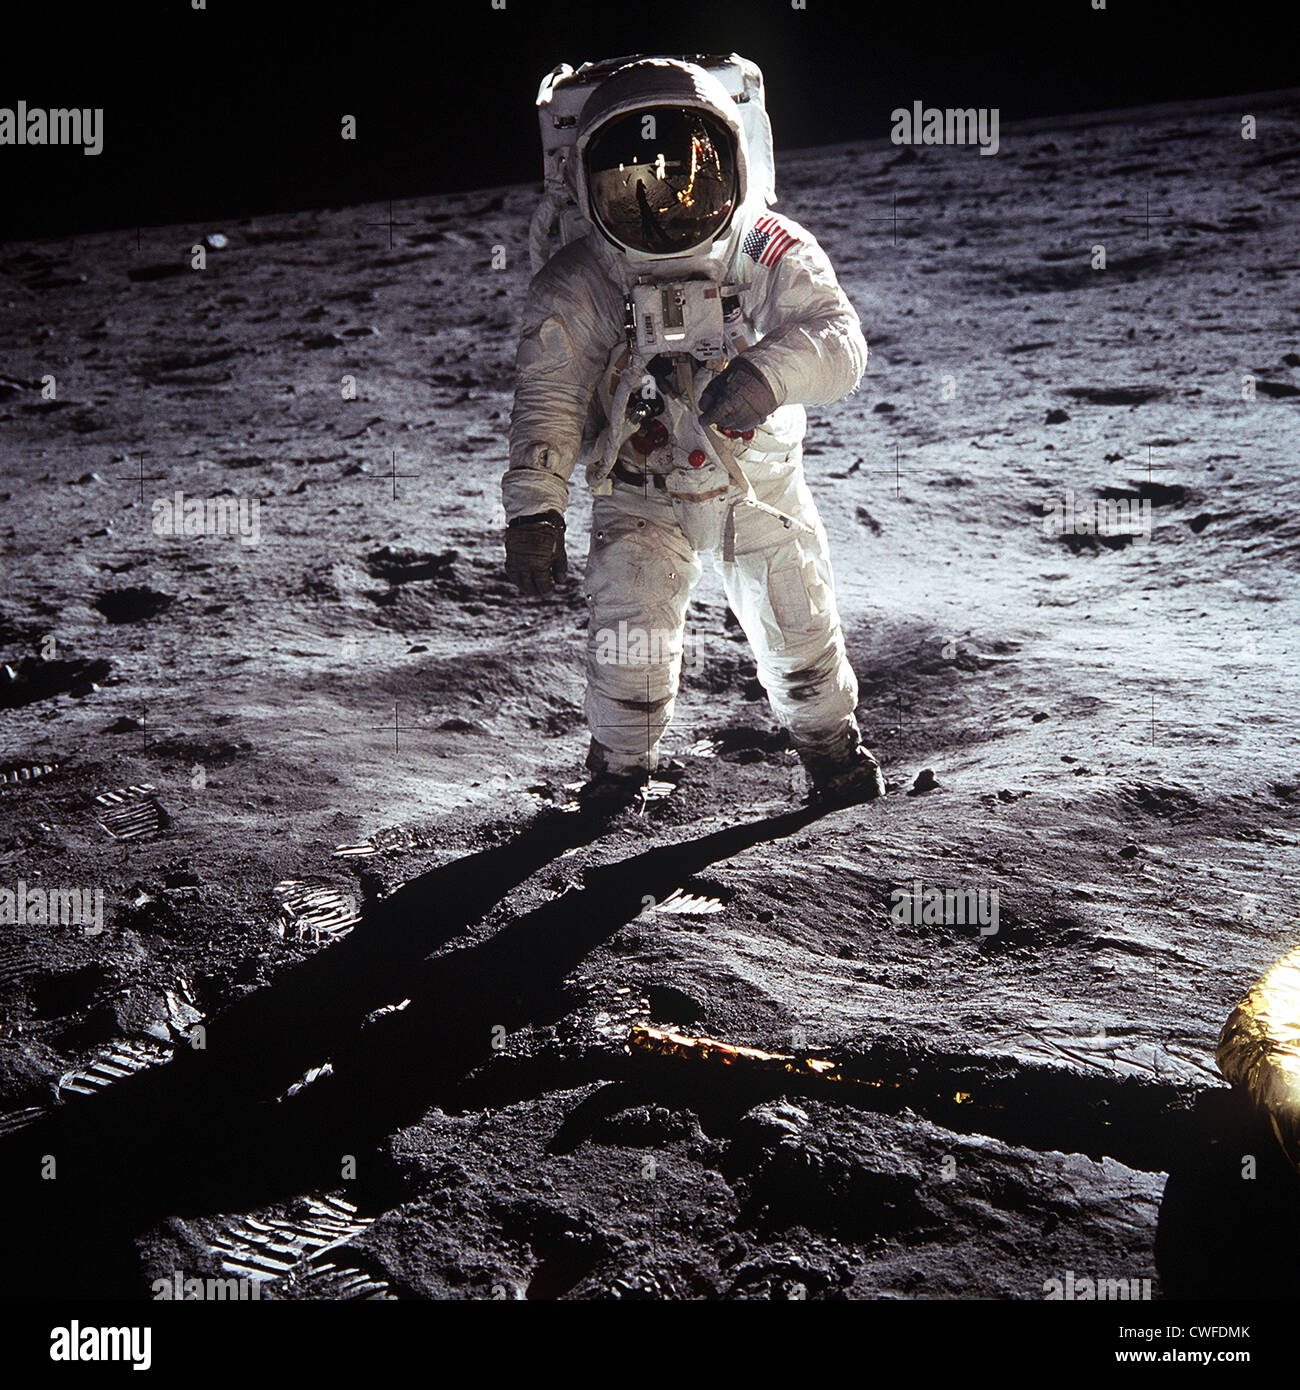 La NASA Astronaut Buzz Aldrin, modulo lunare pilota, passeggiate sulla superficie della luna durante l'Apollo 11 di atterraggio. Astronauta Neil A. Armstrong, commander, ha preso questa fotografia e può essere visto nella riflessione sull'Aldrin del casco. Armstrong e Aldrin divennero i primi uomini a camminare sulla superficie della luna. Foto Stock